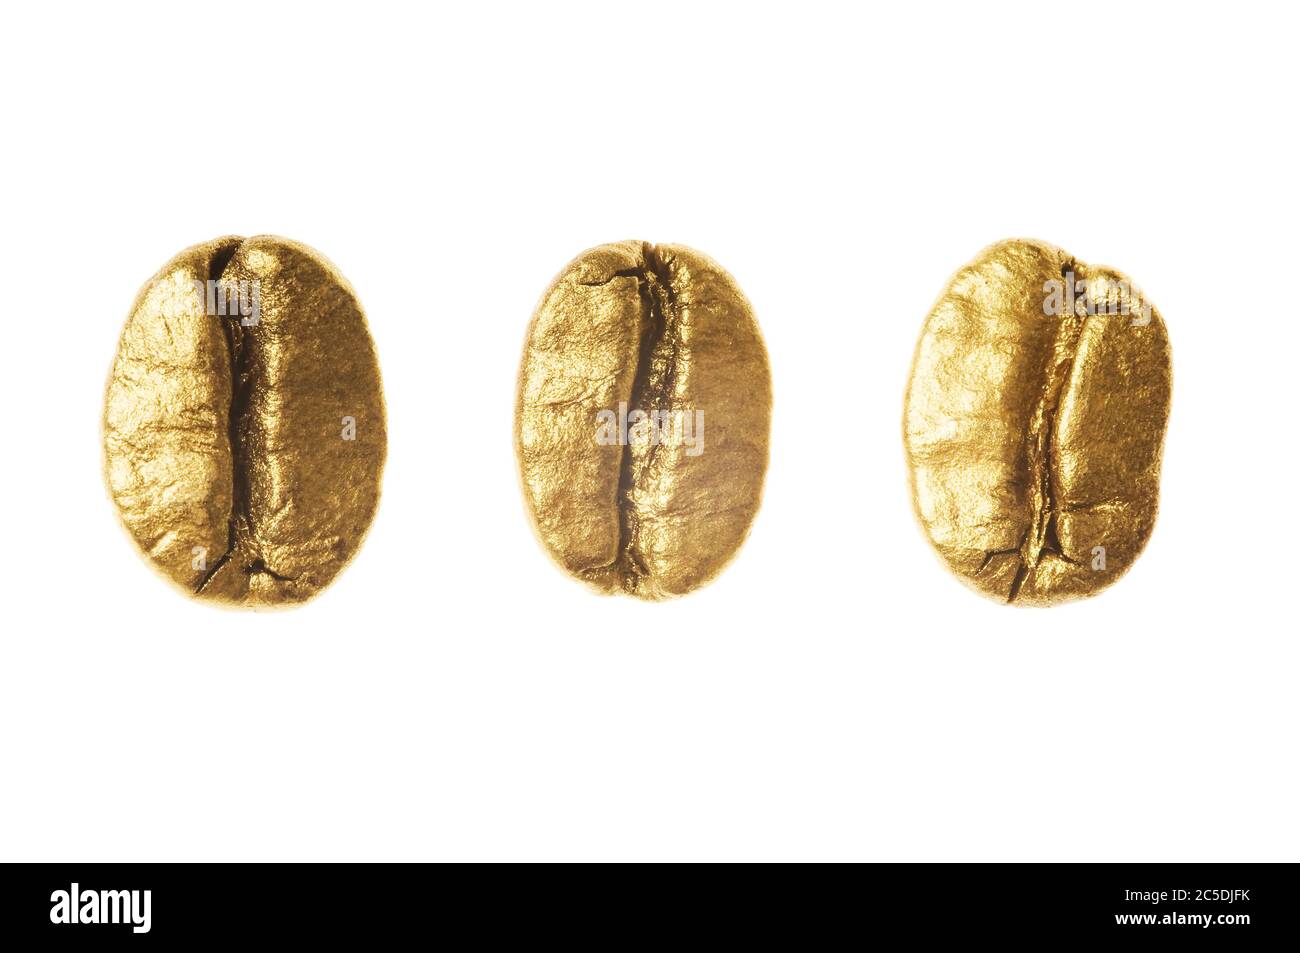 Goldene Kaffeebohnen isoliert auf weißem Hintergrund - Detail. Nahaufnahme einer goldenen Bohne Aroma schwarzen Koffein Getränk Zutat für Kaffee Getränk Stockfoto